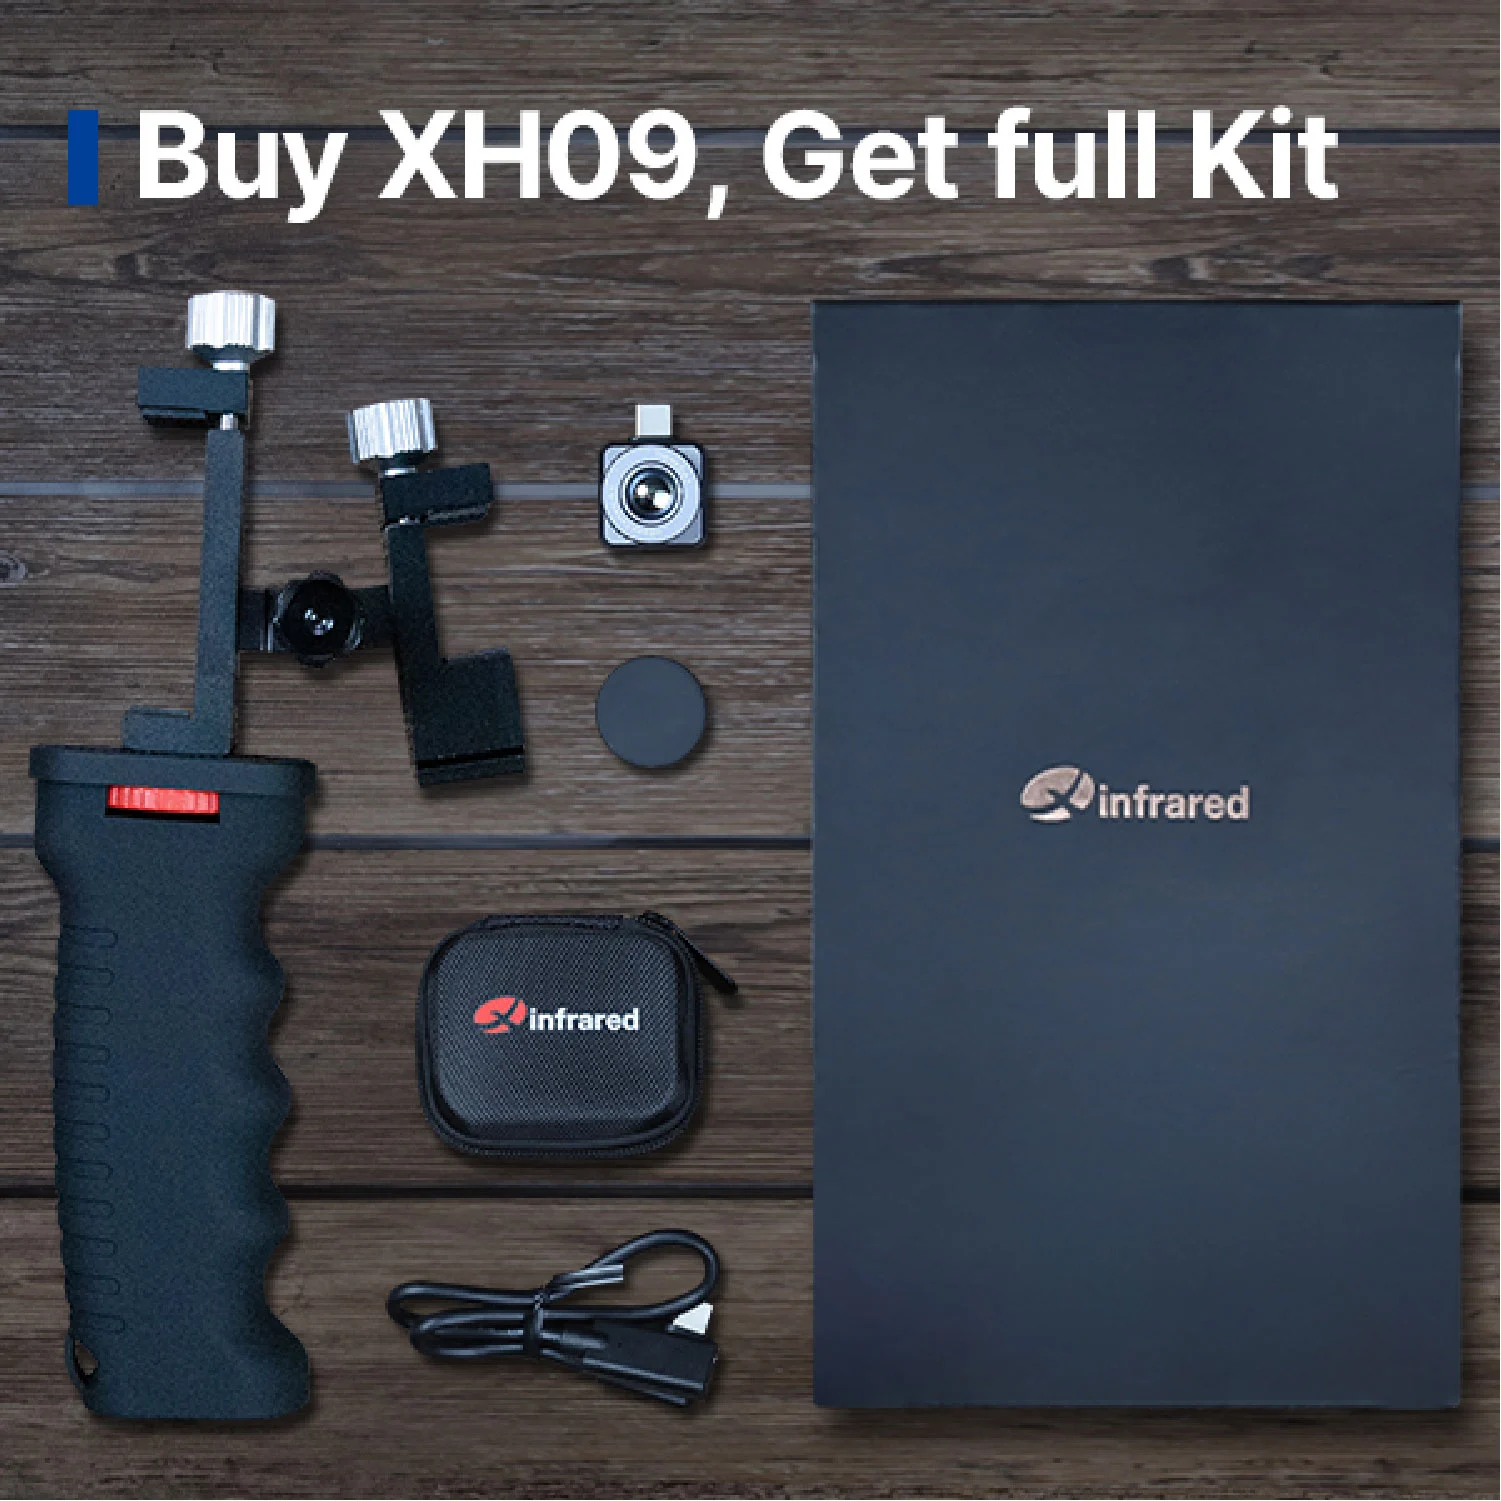 Achetez XH09, obtenez le kit complet